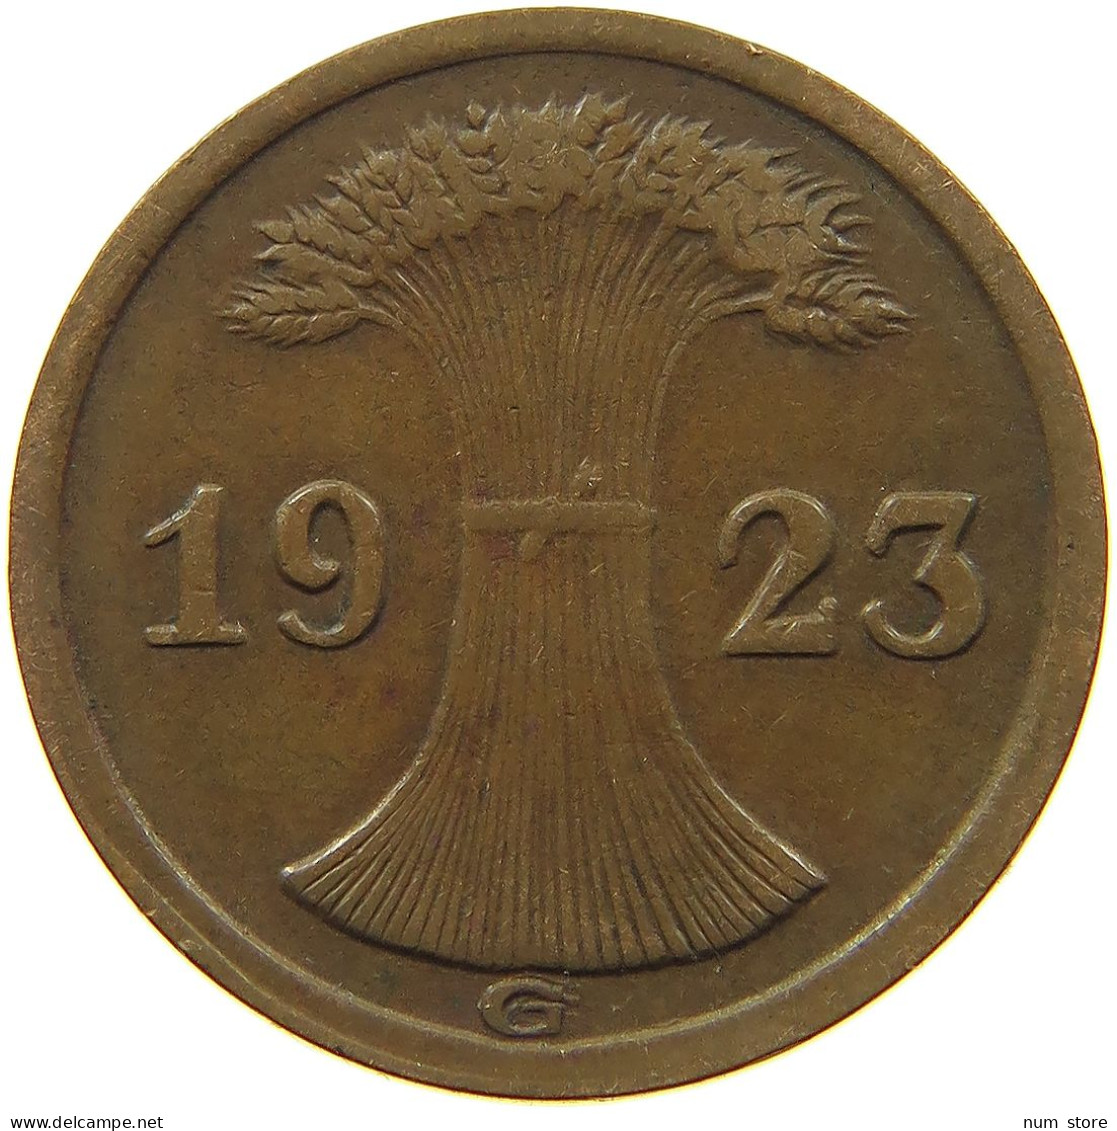 WEIMARER REPUBLIK 2 RENTENPFENNIG 1923 G DOPPELSCHLAG G #MA 100055 - 2 Renten- & 2 Reichspfennig